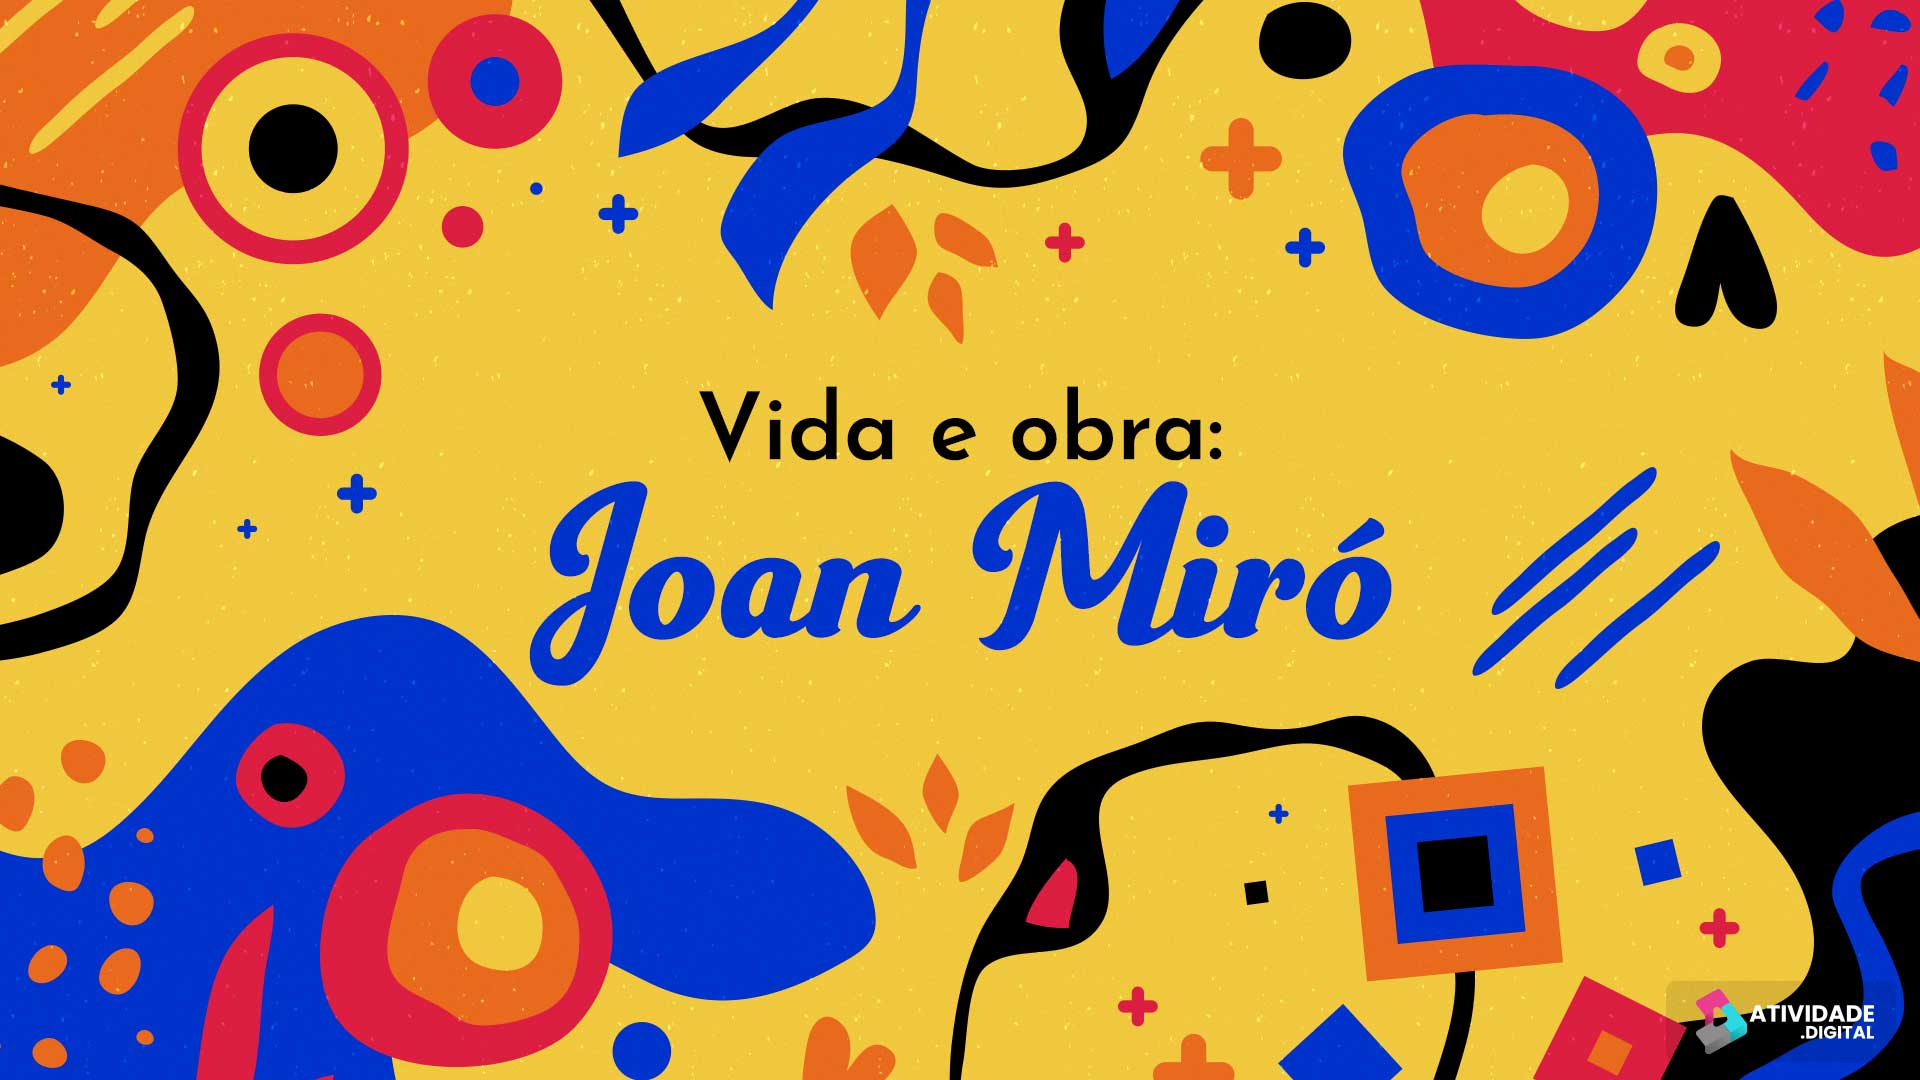 Vida e obra: Joan Miró